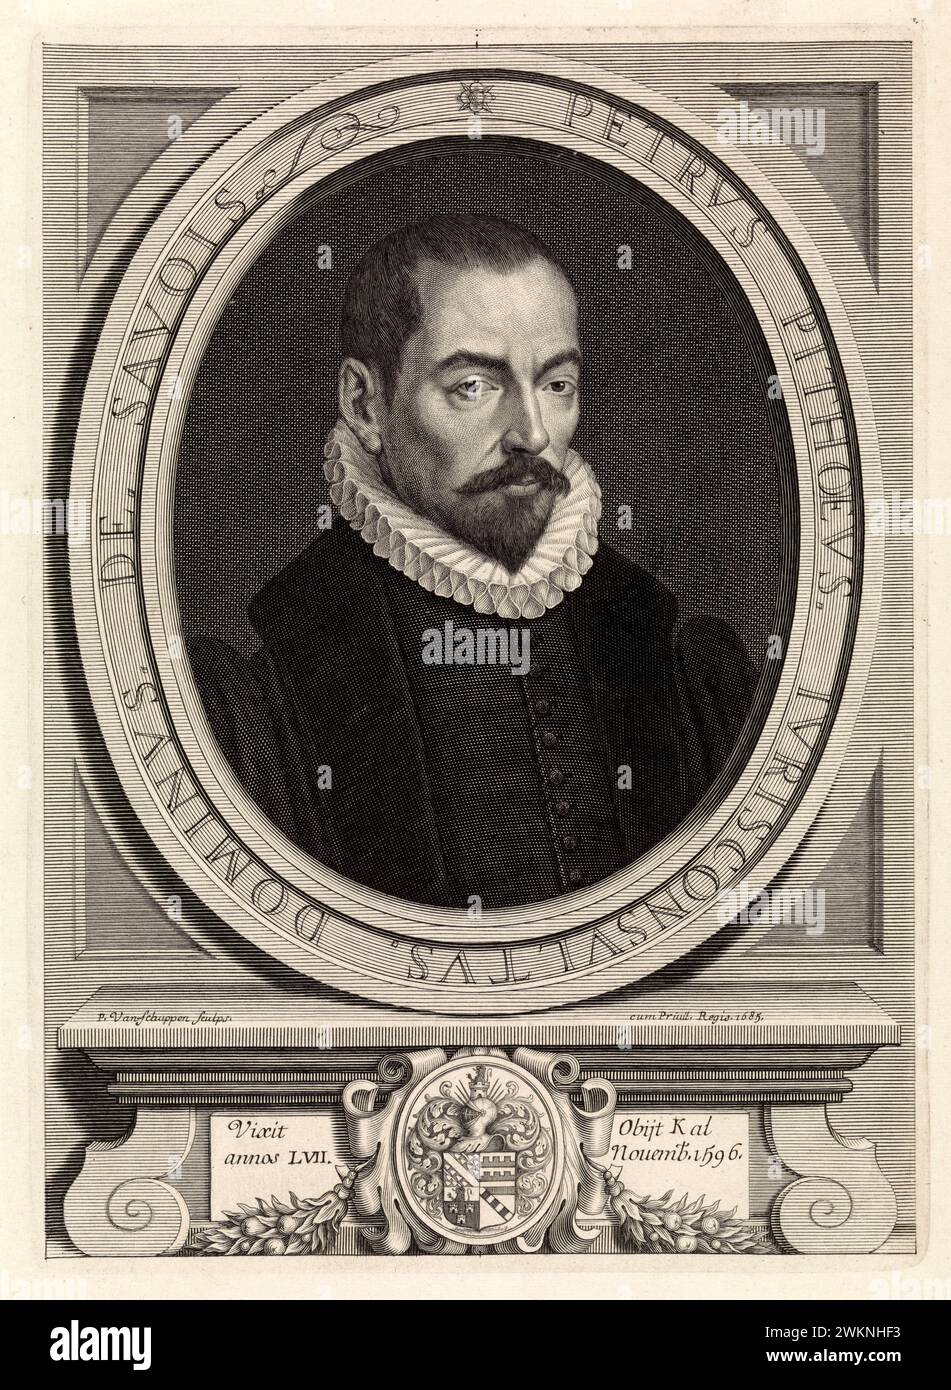 1580 c. , FRANKREICH : der italienische Jurist , Historiker und Schriftsteller PIERRE PITHOU ( 1539–1596 ). Porträt von Van Schuppen , veröffentlicht 1685 . - GESCHICHTE - FOTO STORICHE - HISTORIAN - STORICO - SCRITTORE - WRITER - LETTERATURA - LITERATUR - giureconsulto - GIURISTA - LEGGE - LAY - nobili - nobiltà francese - französischer Adel - FRANCIA - INCISIONE - GRAVUR - ILLUSTRATION - ILLUSTRAZIONE - Kragen - Collare - Colletto - GORGIERA - pizzo - Spitze - Bart - barba -- Archivio GBB Stockfoto